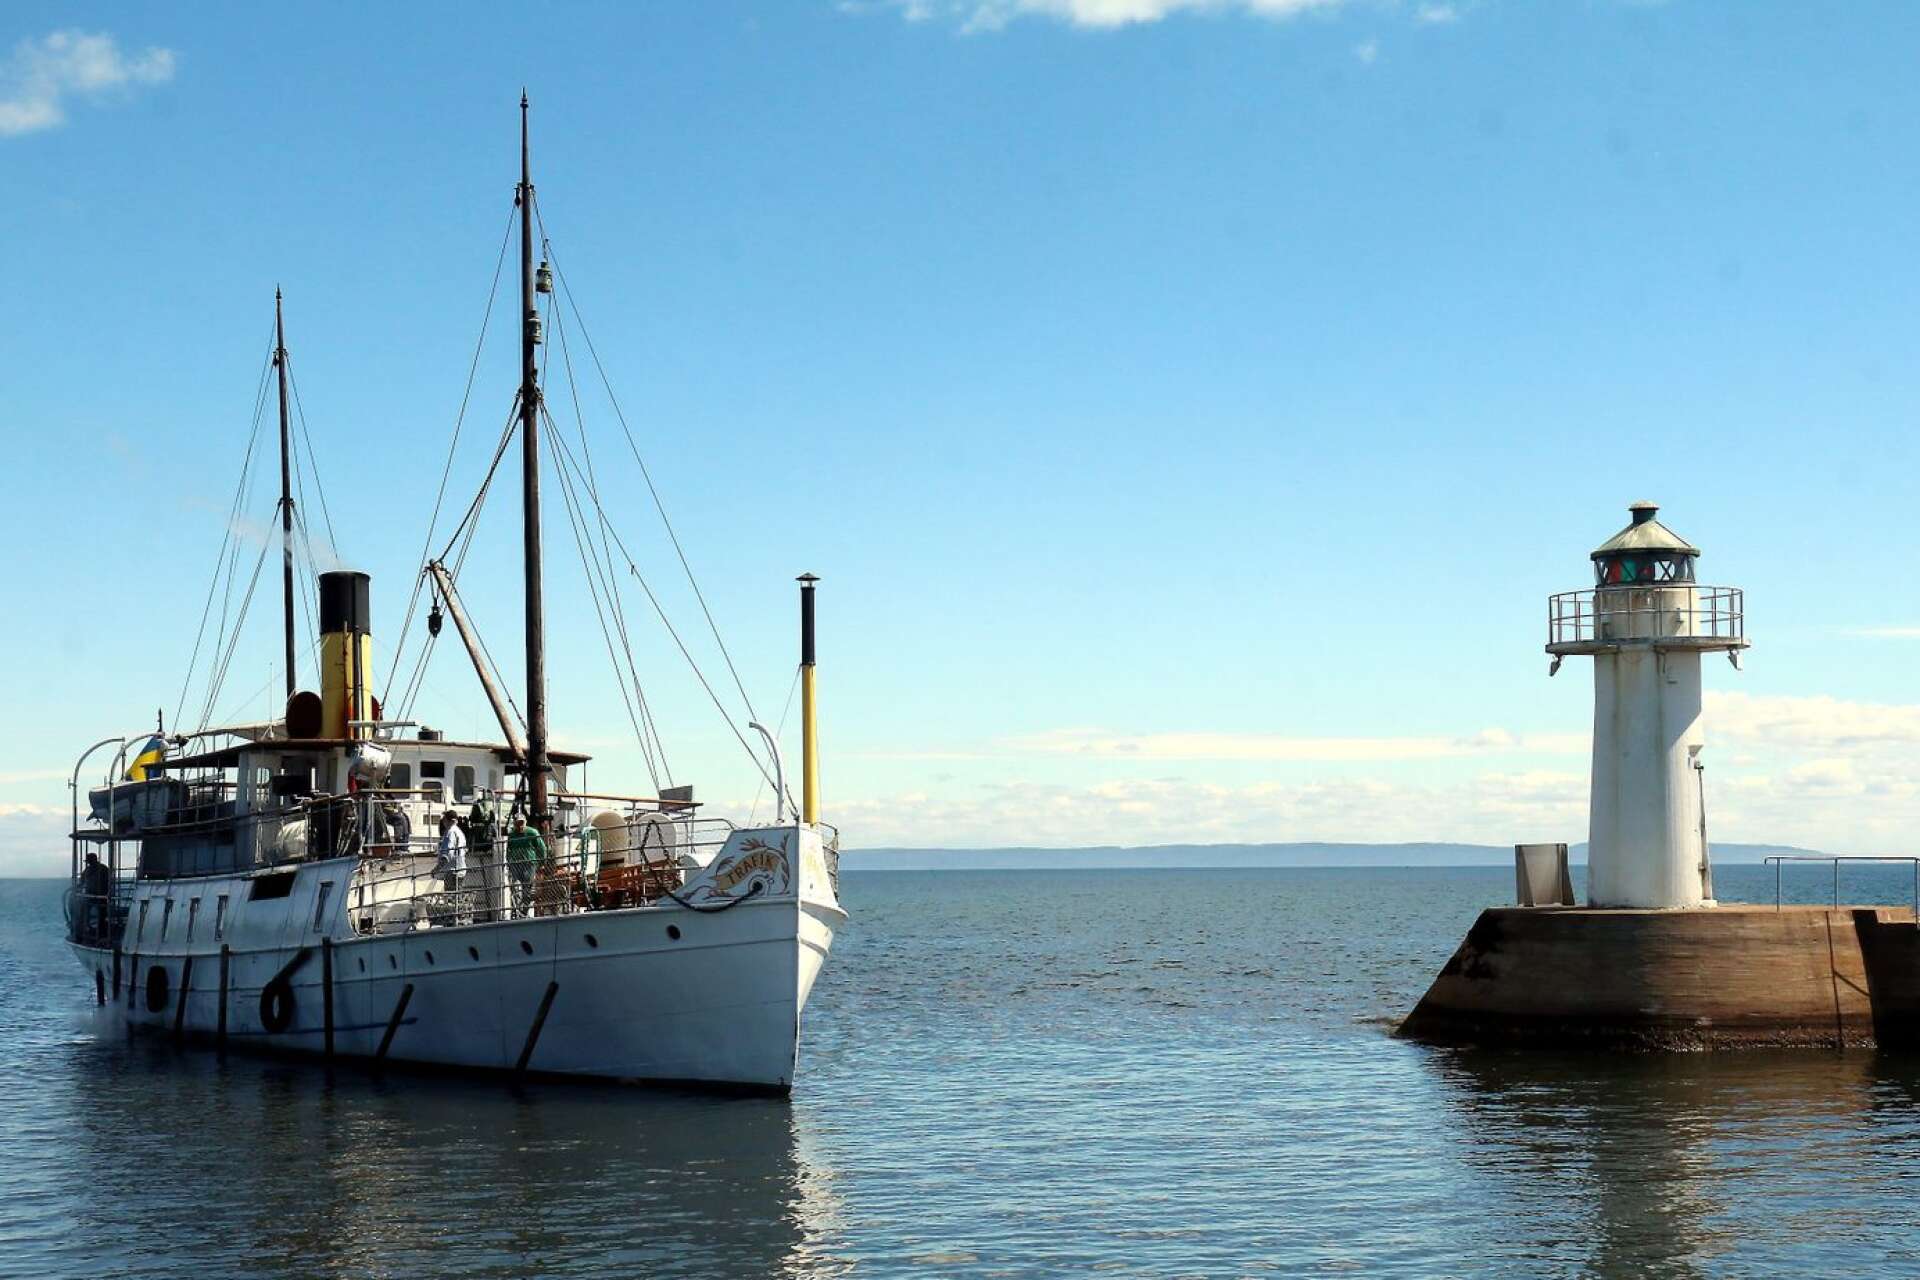 Ångfartyget Trafik gör flera turer till Visingsö och östgötasidan, samt rundturer på Vättern i sommar. 